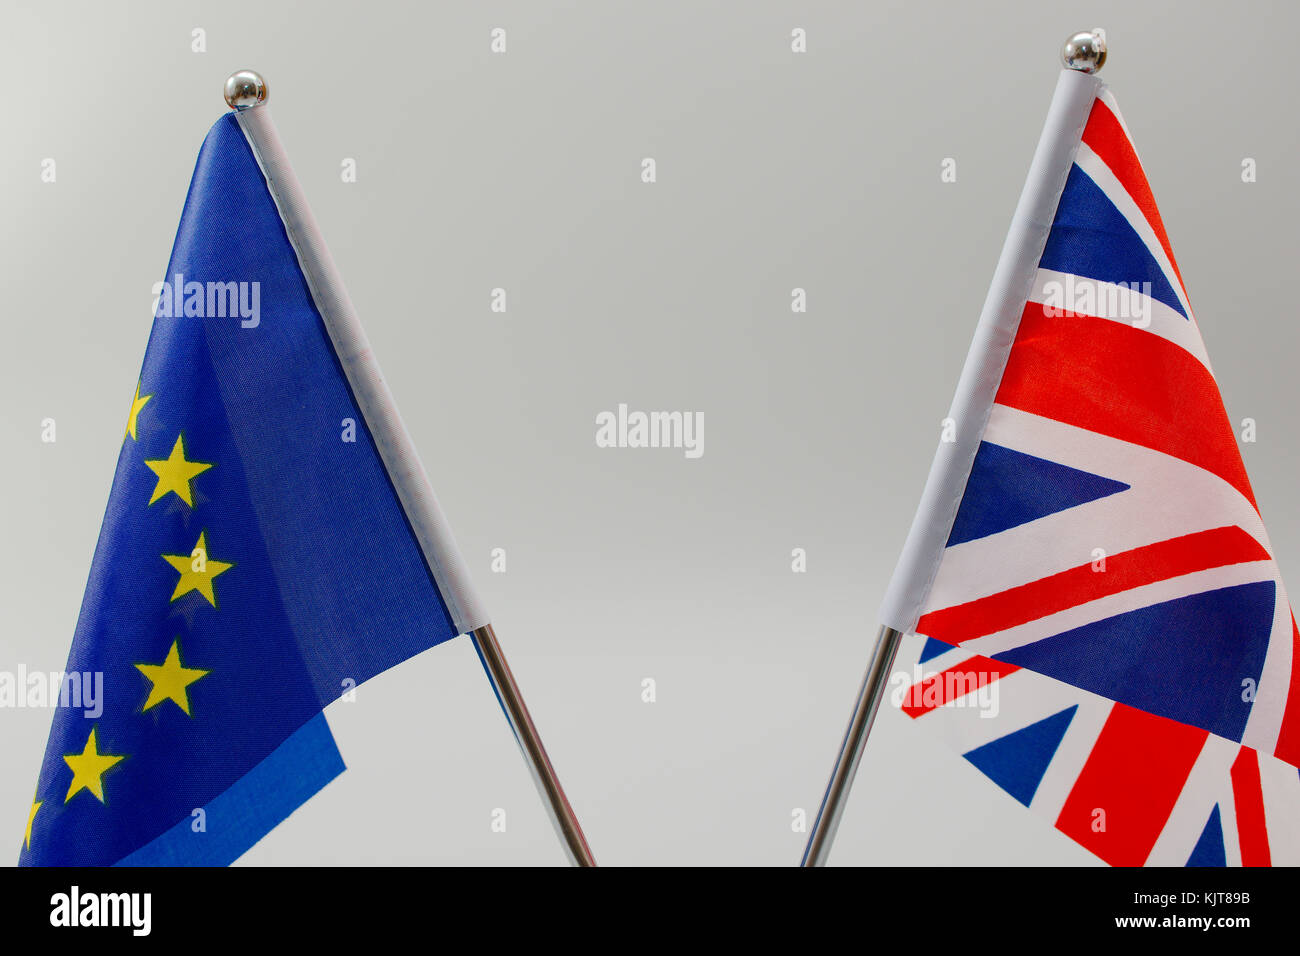 Le pavillon du Royaume-Uni à l'avant-plan avec le drapeau de l'Union européenne de plus en plus floue dans l'arrière-plan. Banque D'Images